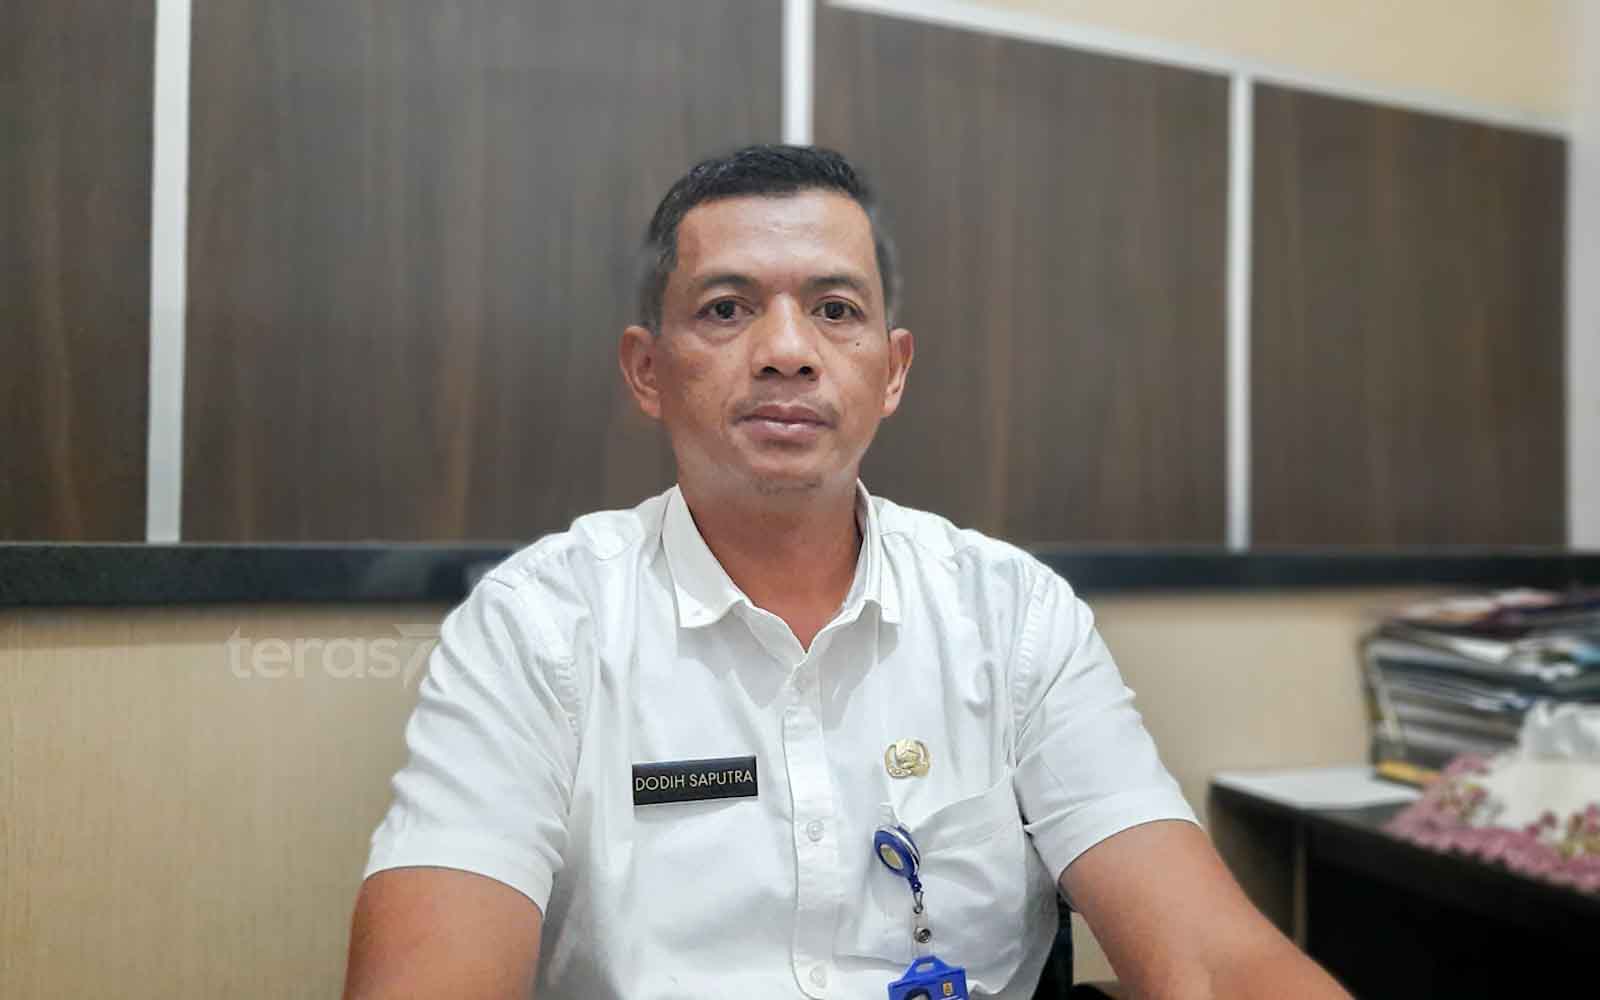 Kepala Bidang Pajak dan Retribusi Daerah BPPRD Kota Banjarbaru, Dodih Saputra. (Foto: ariandi)